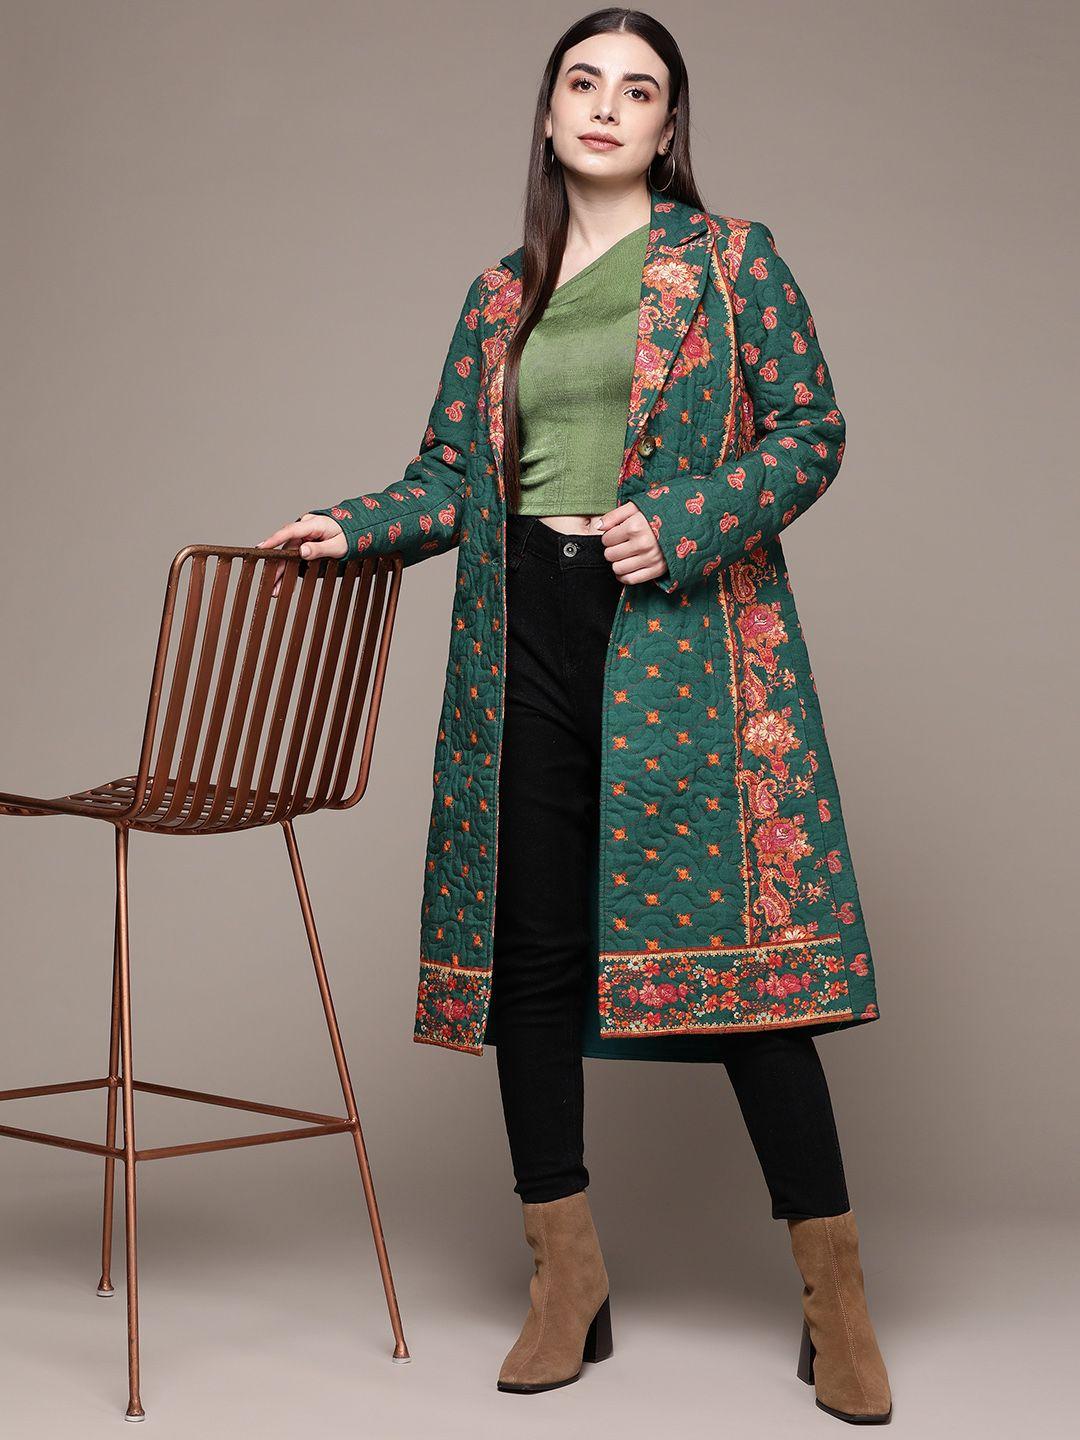 aarke ritu kumar woman floral print coat